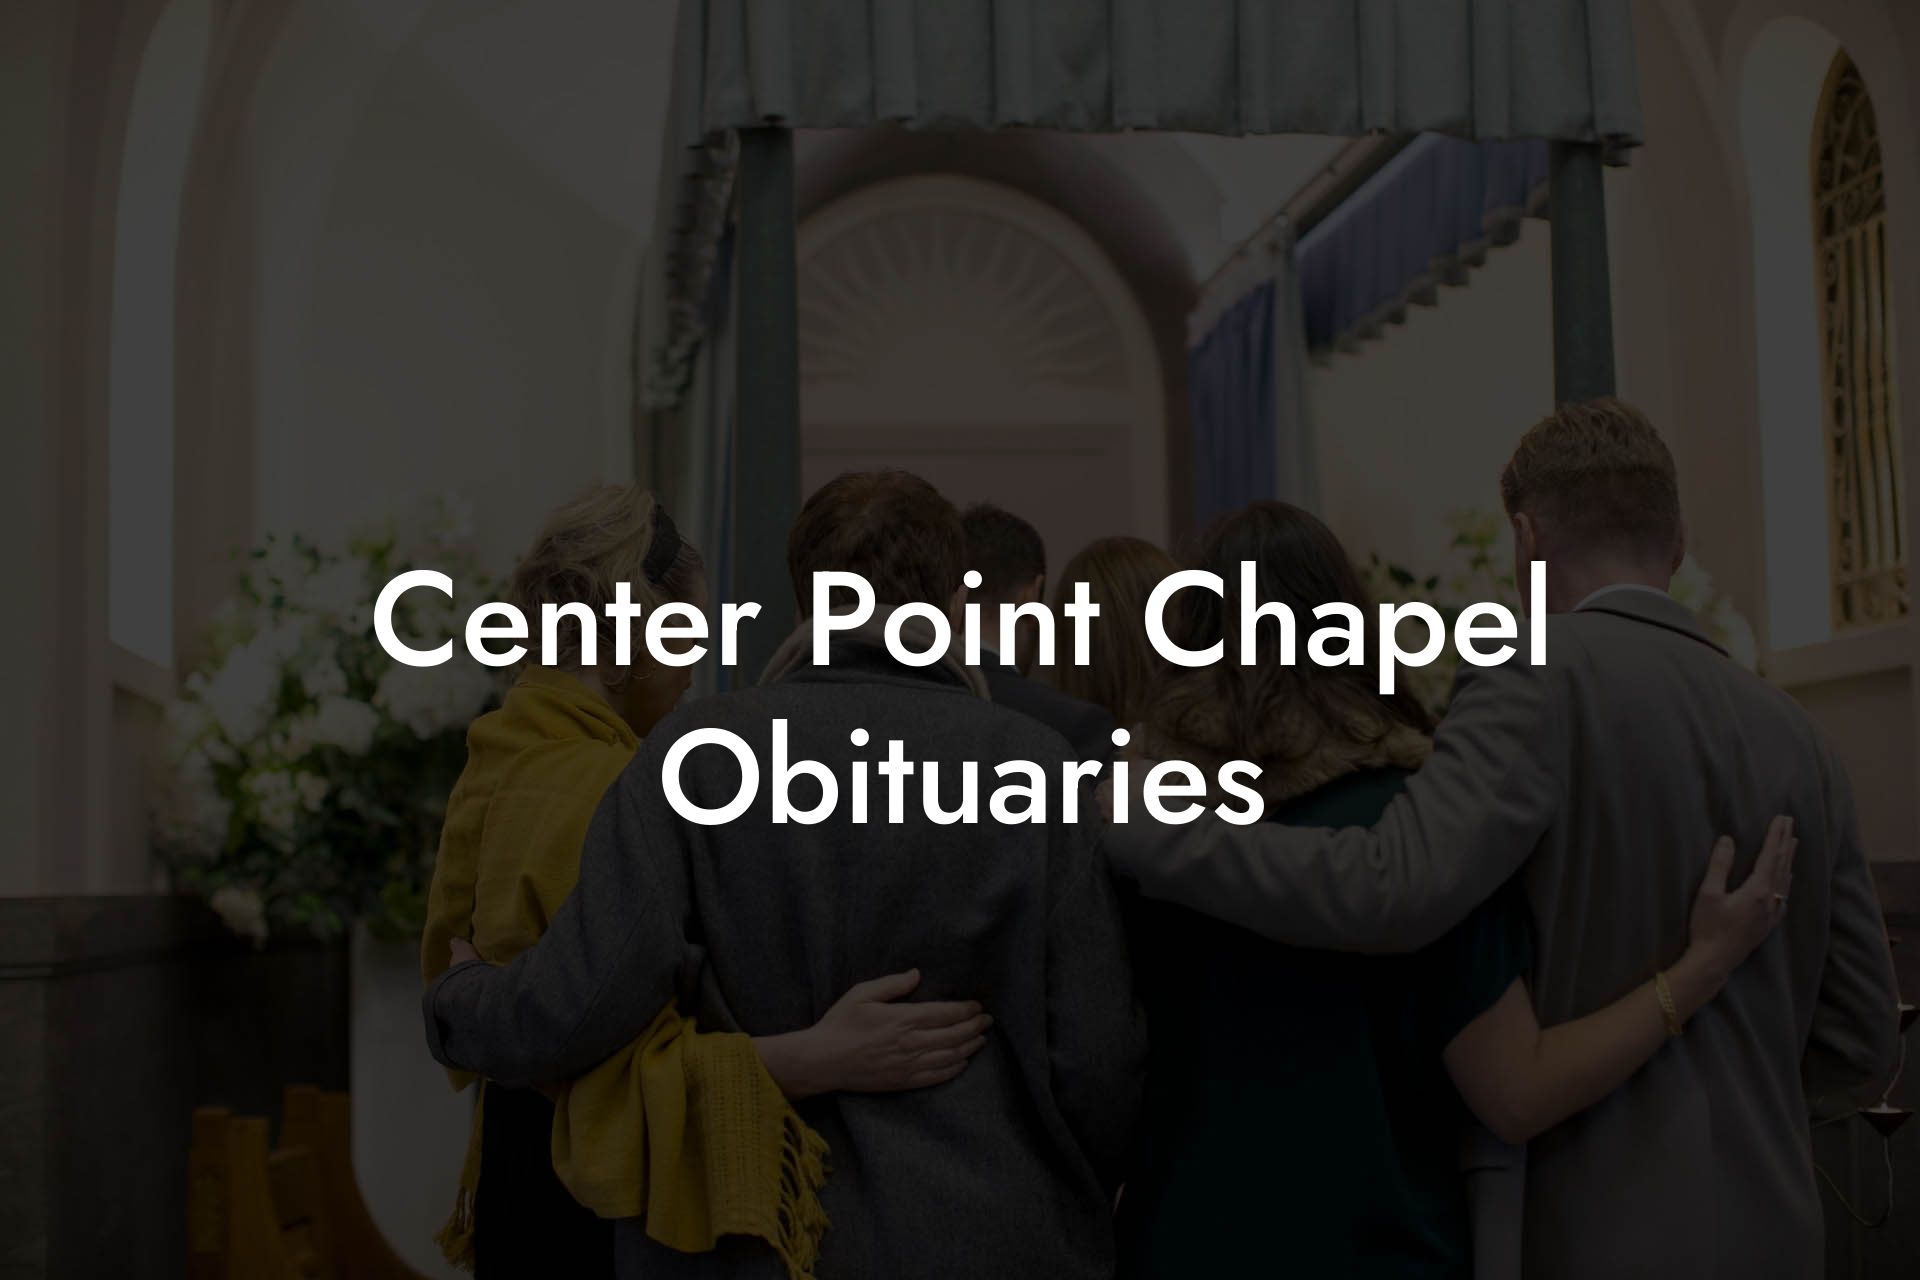 Center Point Chapel Obituaries